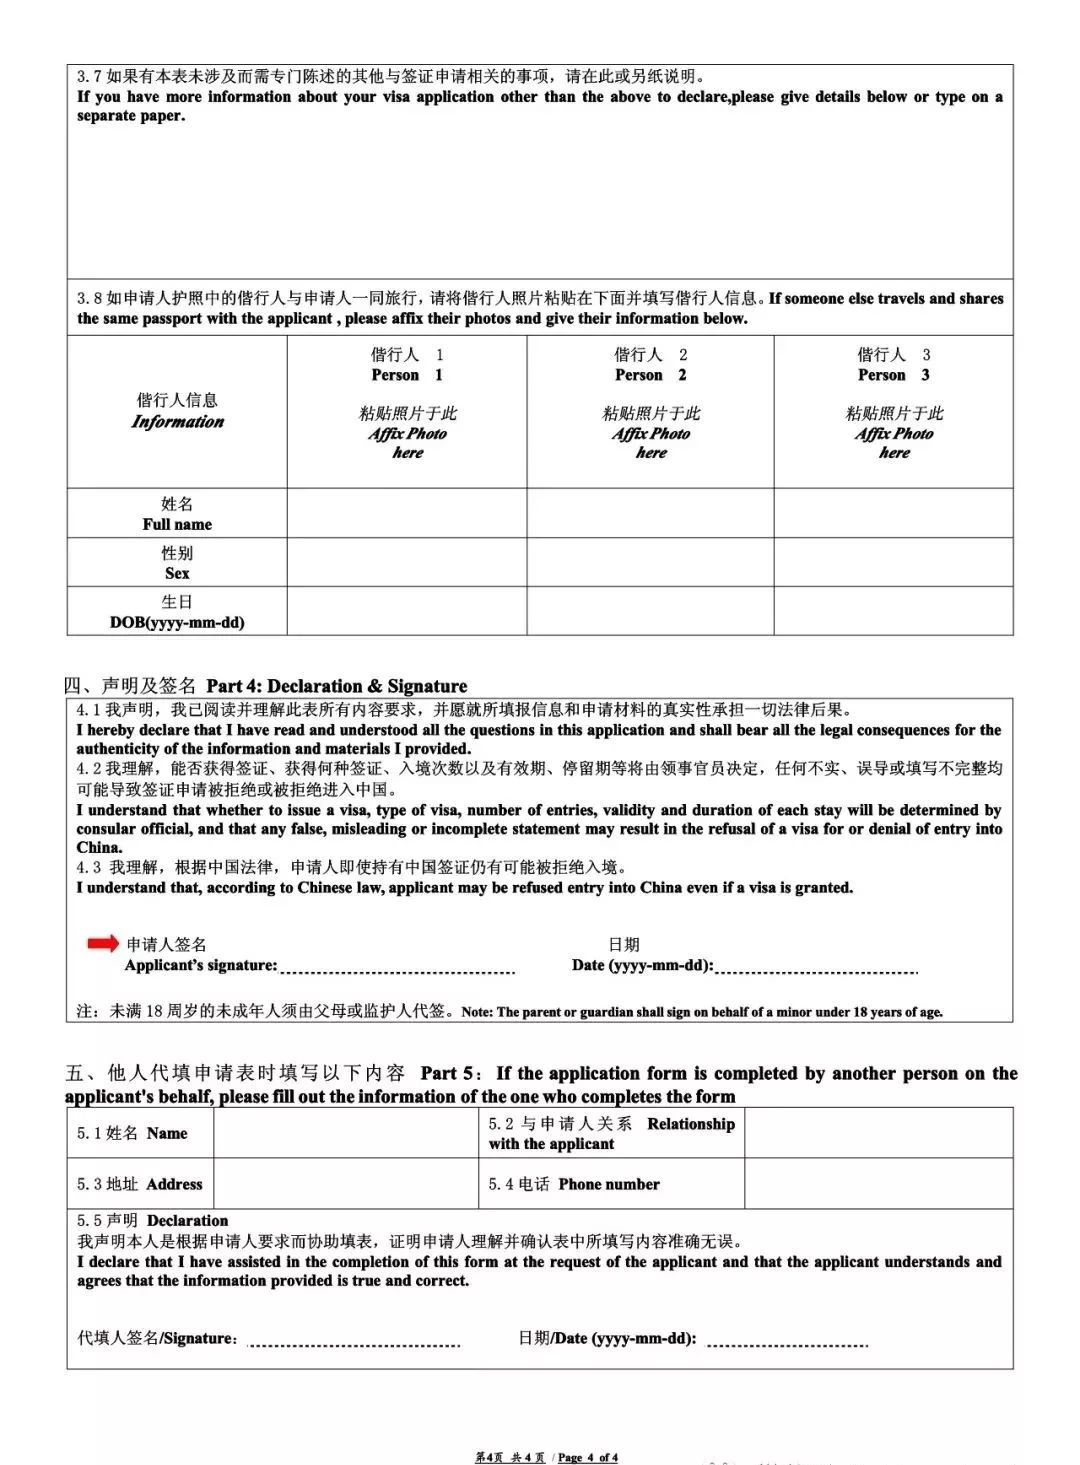 China visa application form 4